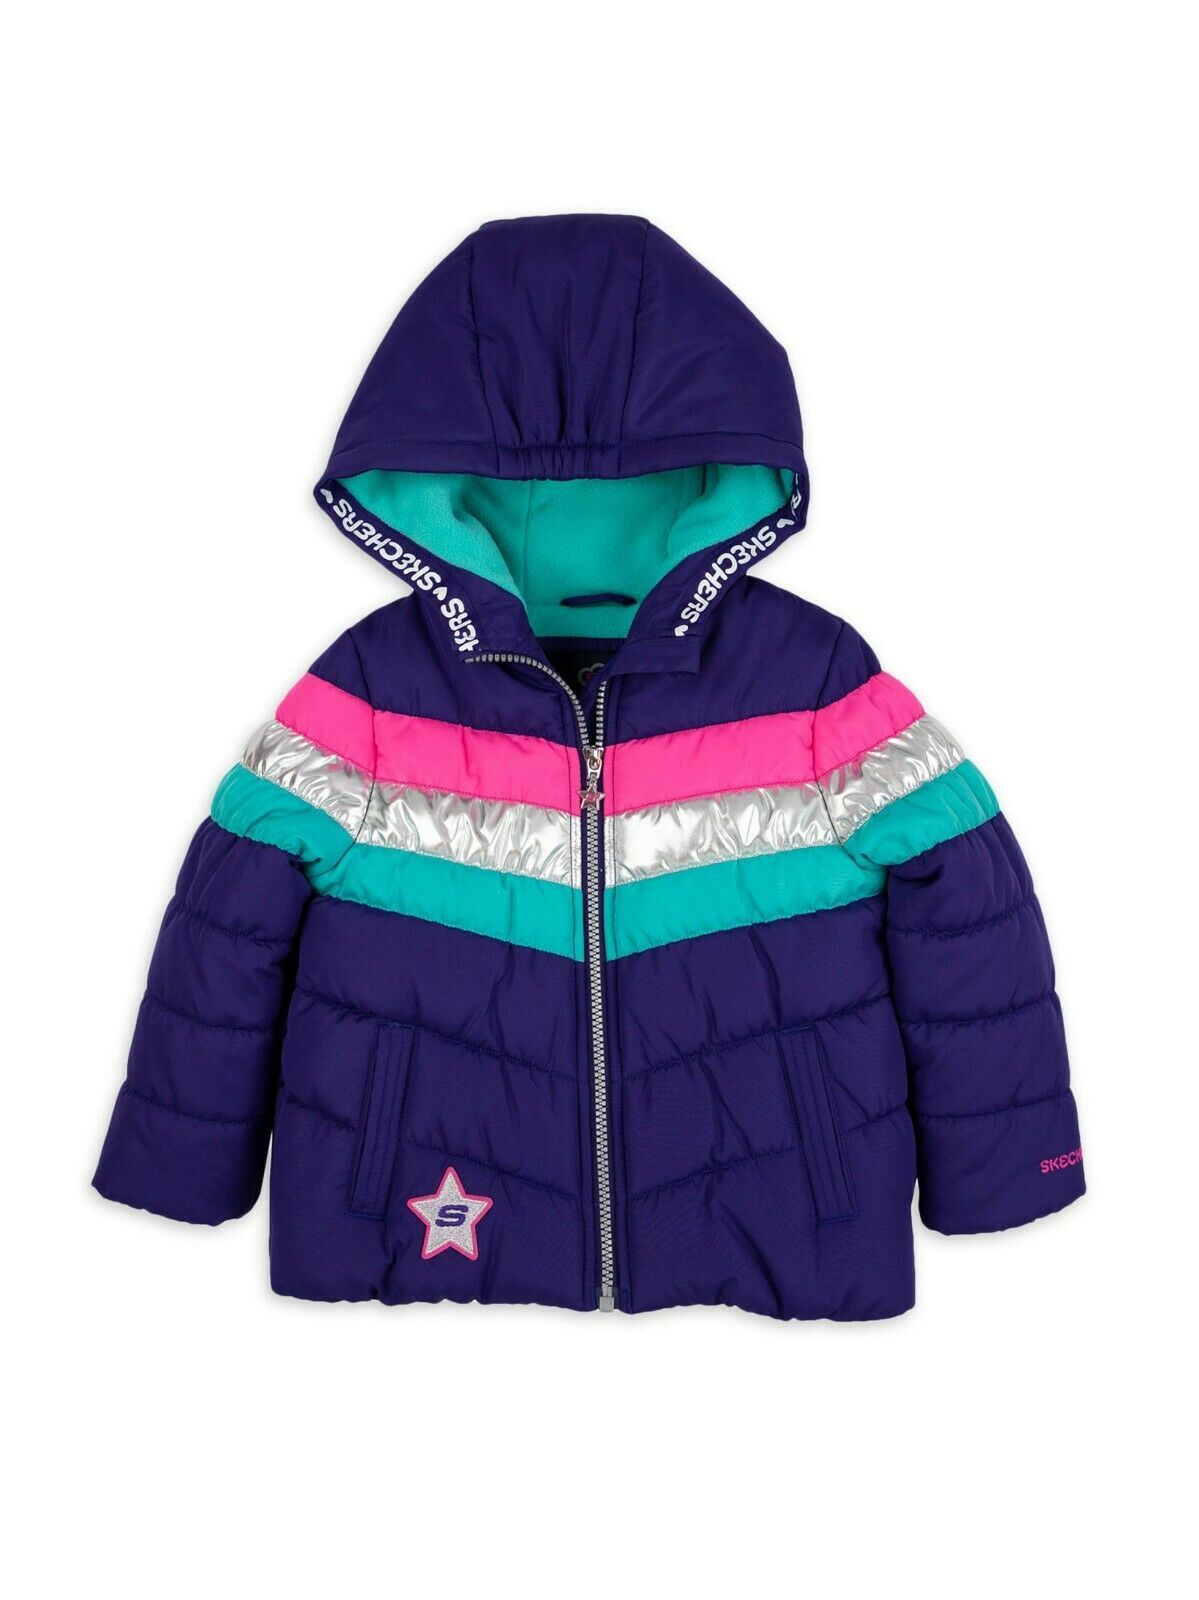 Girls Skechers Jacket 4 5/6 6X 10/12 or 14/16 Fleece Bubble Puffer Coat - $19.95